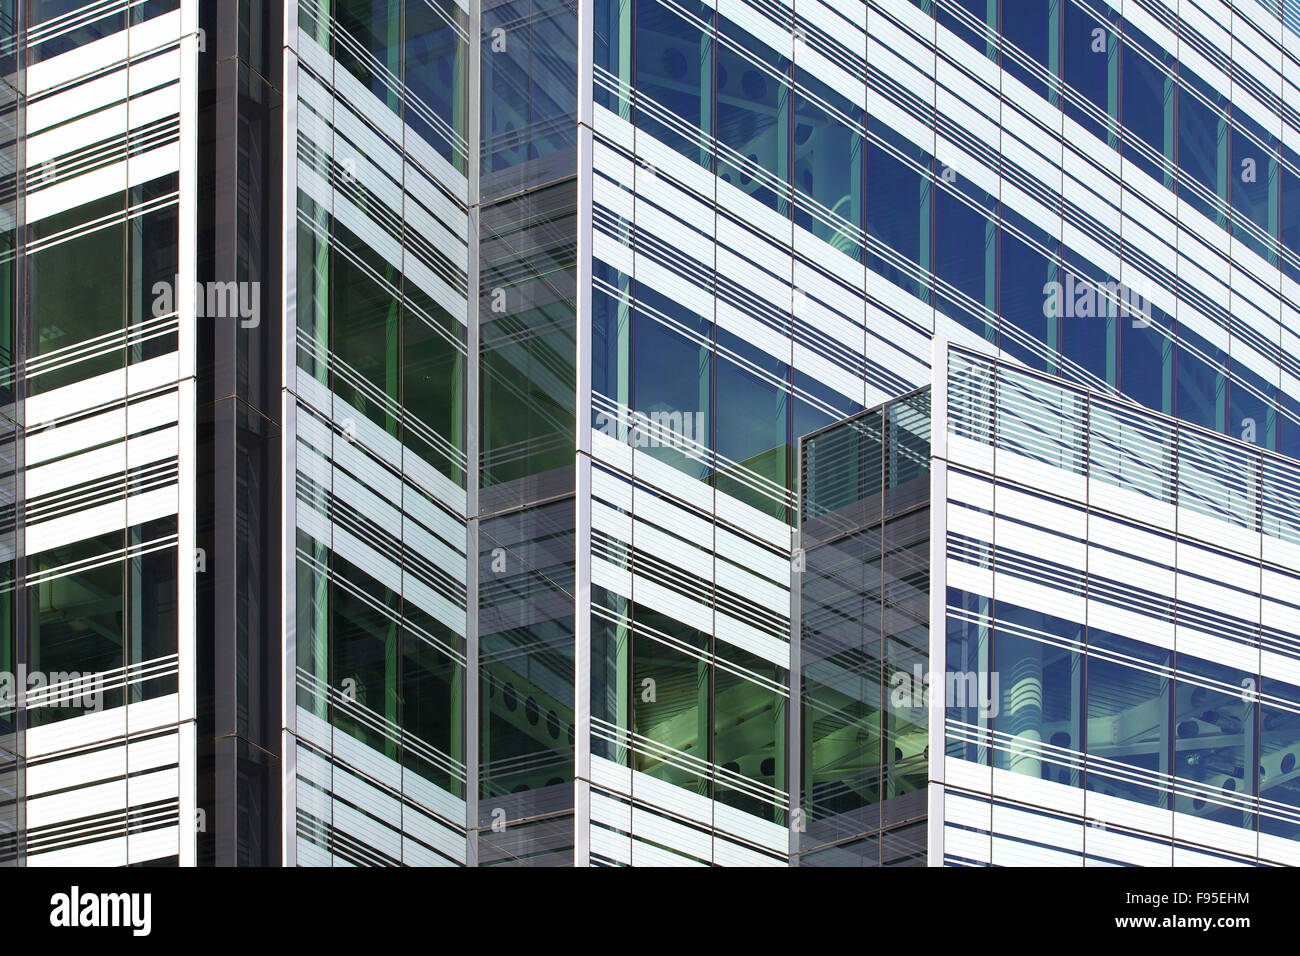 10 Hammersmith Grove W6 de Londres. Nueva oficina desarrollo por Wates construcción para el desarrollo de títulos en Hammersmith, Londres. Vista exterior del edificio de oficinas. La arquitectura contemporánea con fachada de vidrio. Foto de stock